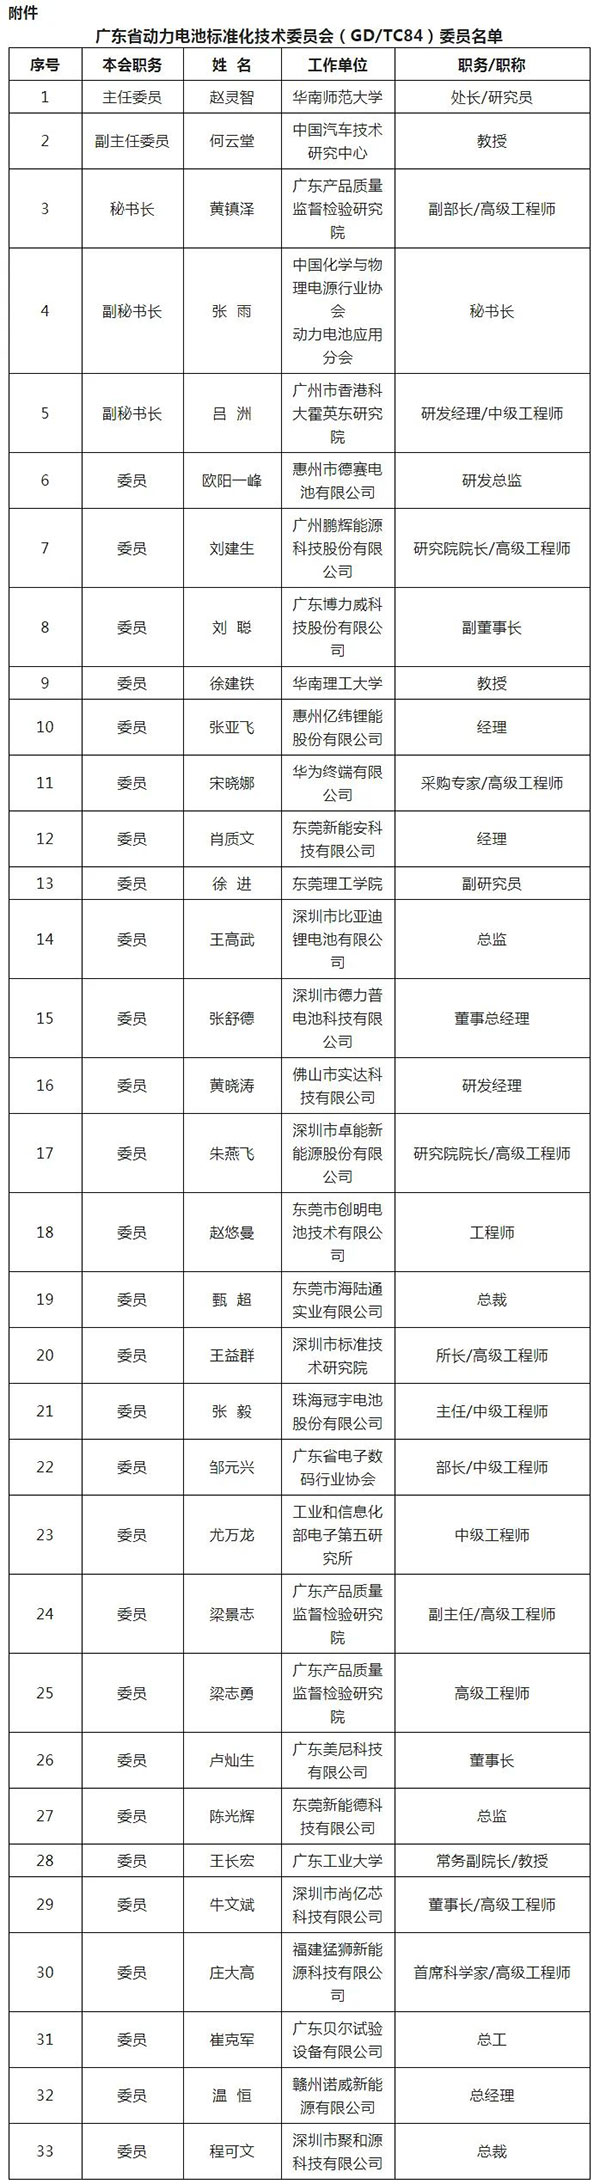 比亚迪/亿纬/华为等企业机构33人入选广东省电池标准化技术委员会